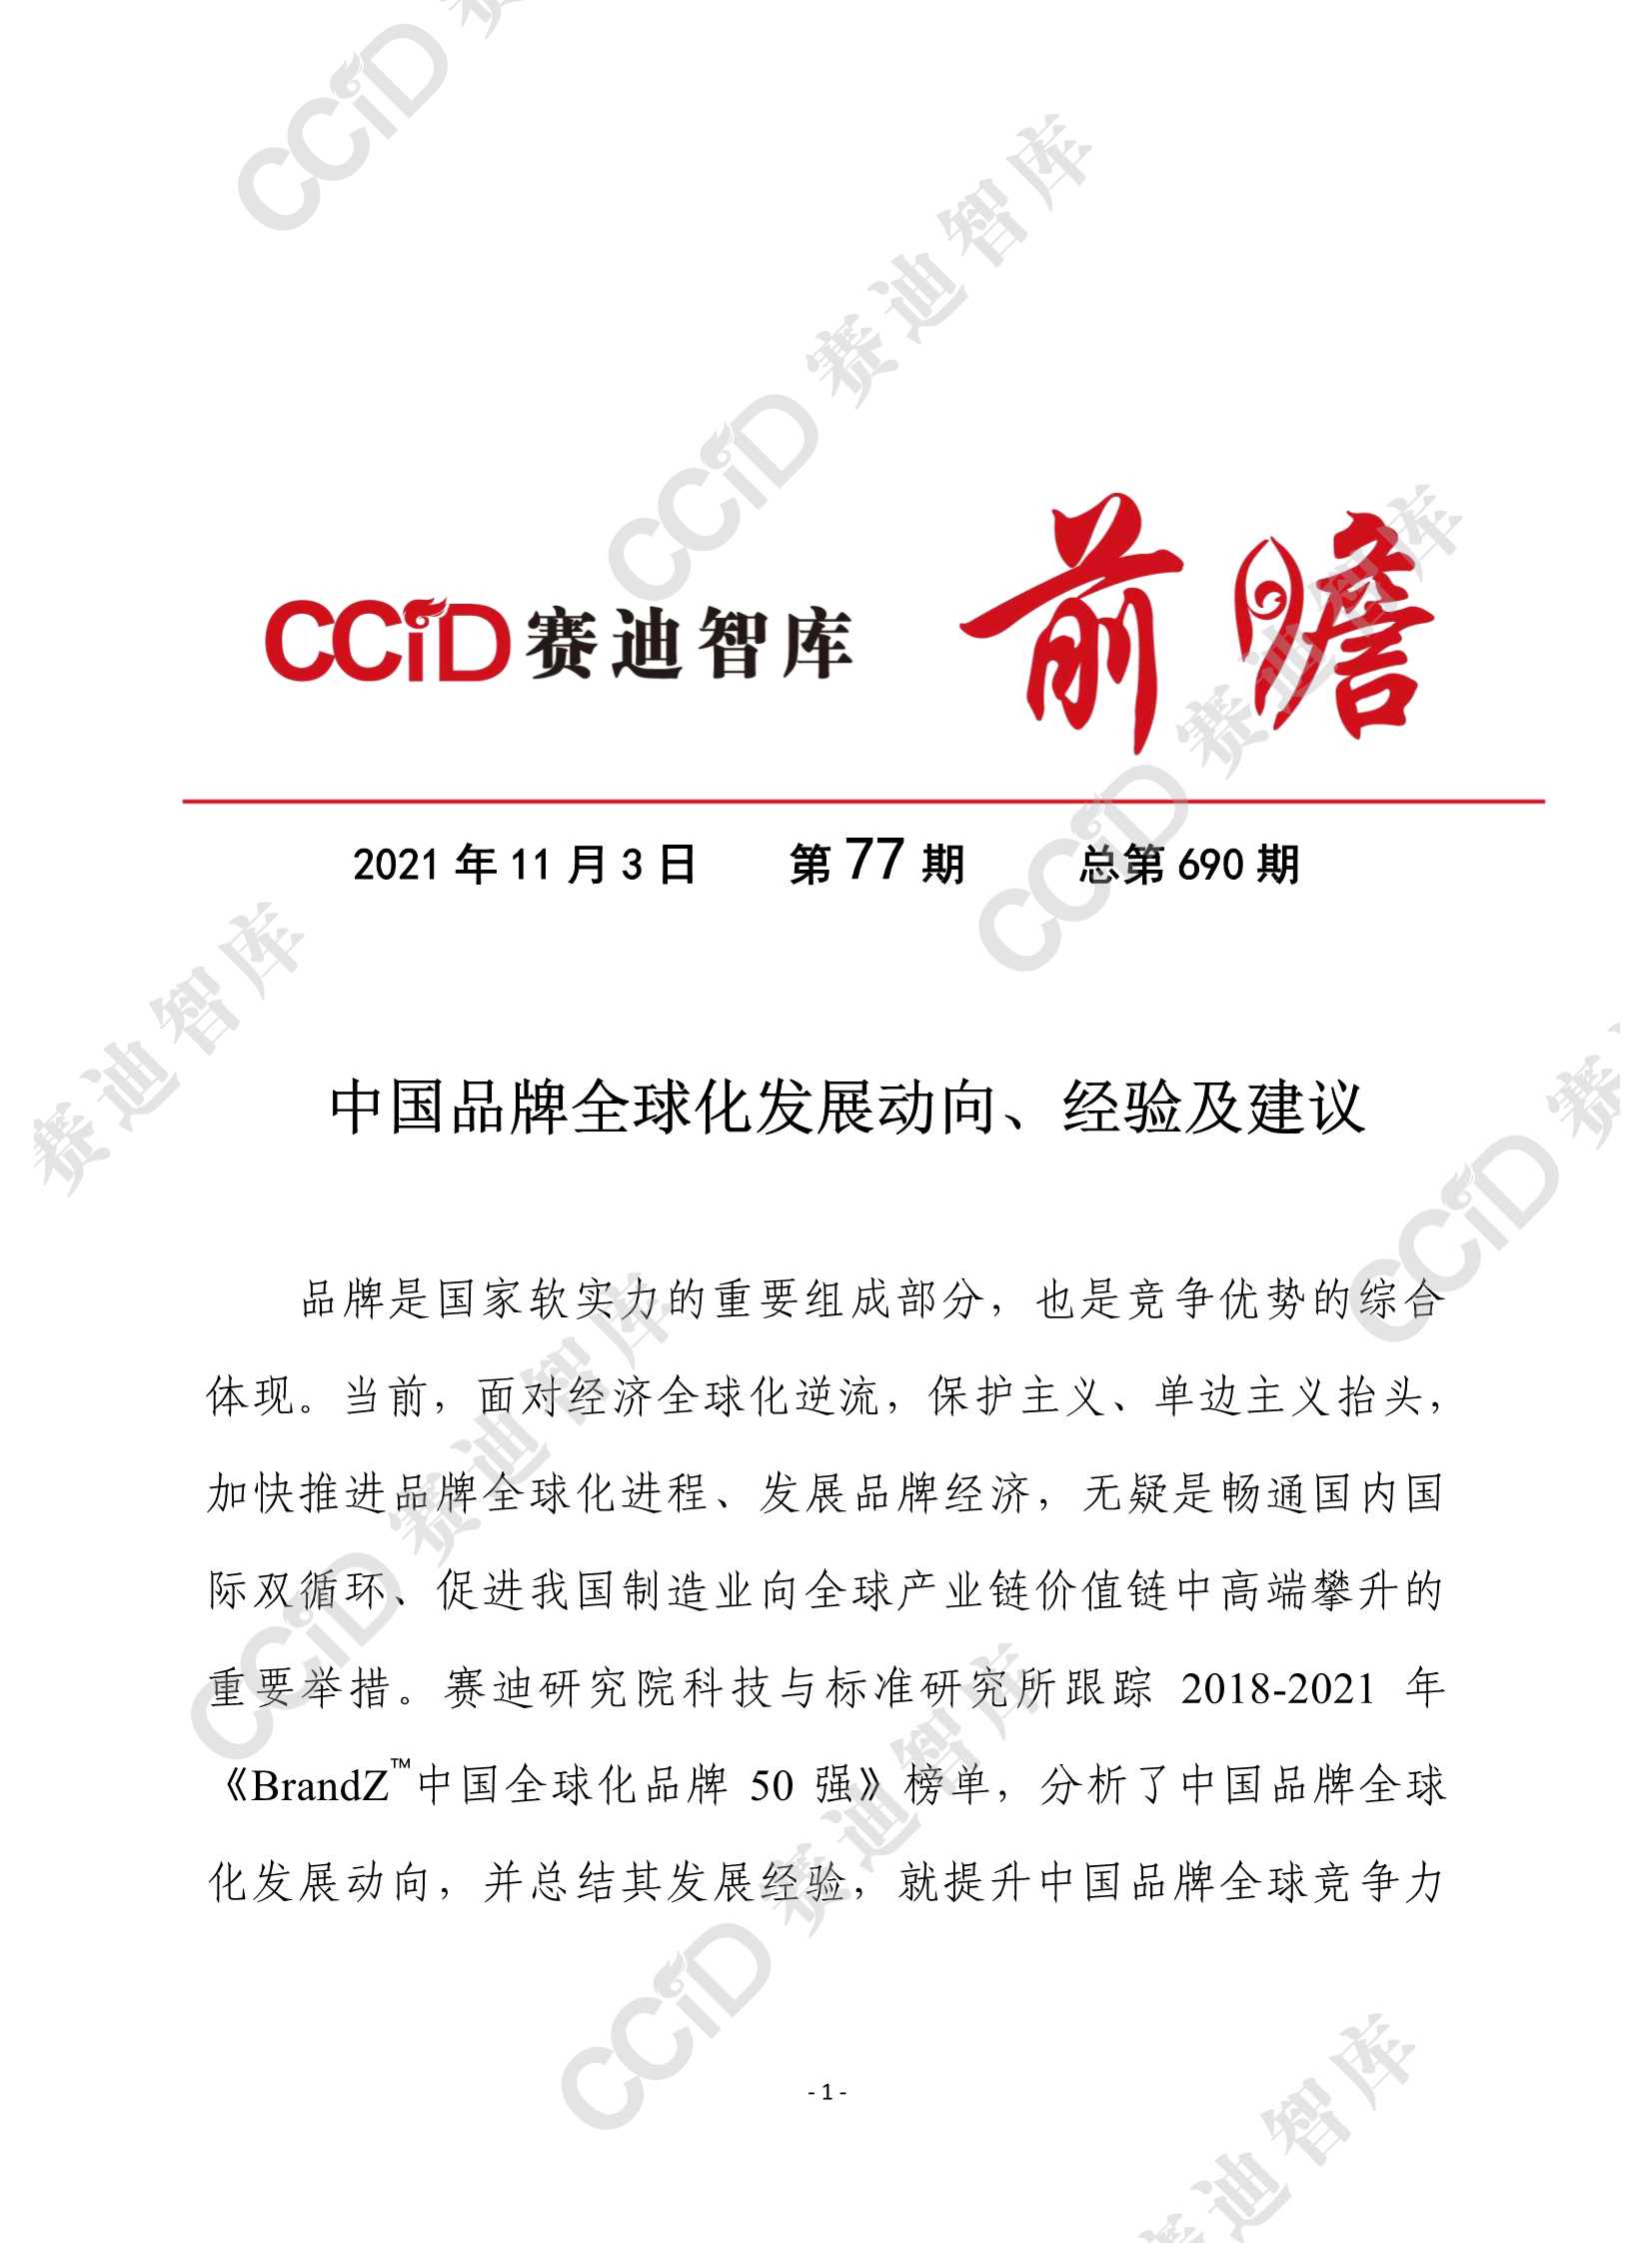 赛迪前瞻-中国品牌全球化发展动向、成功经验及思考建议 （科标所）-2021.11-13页